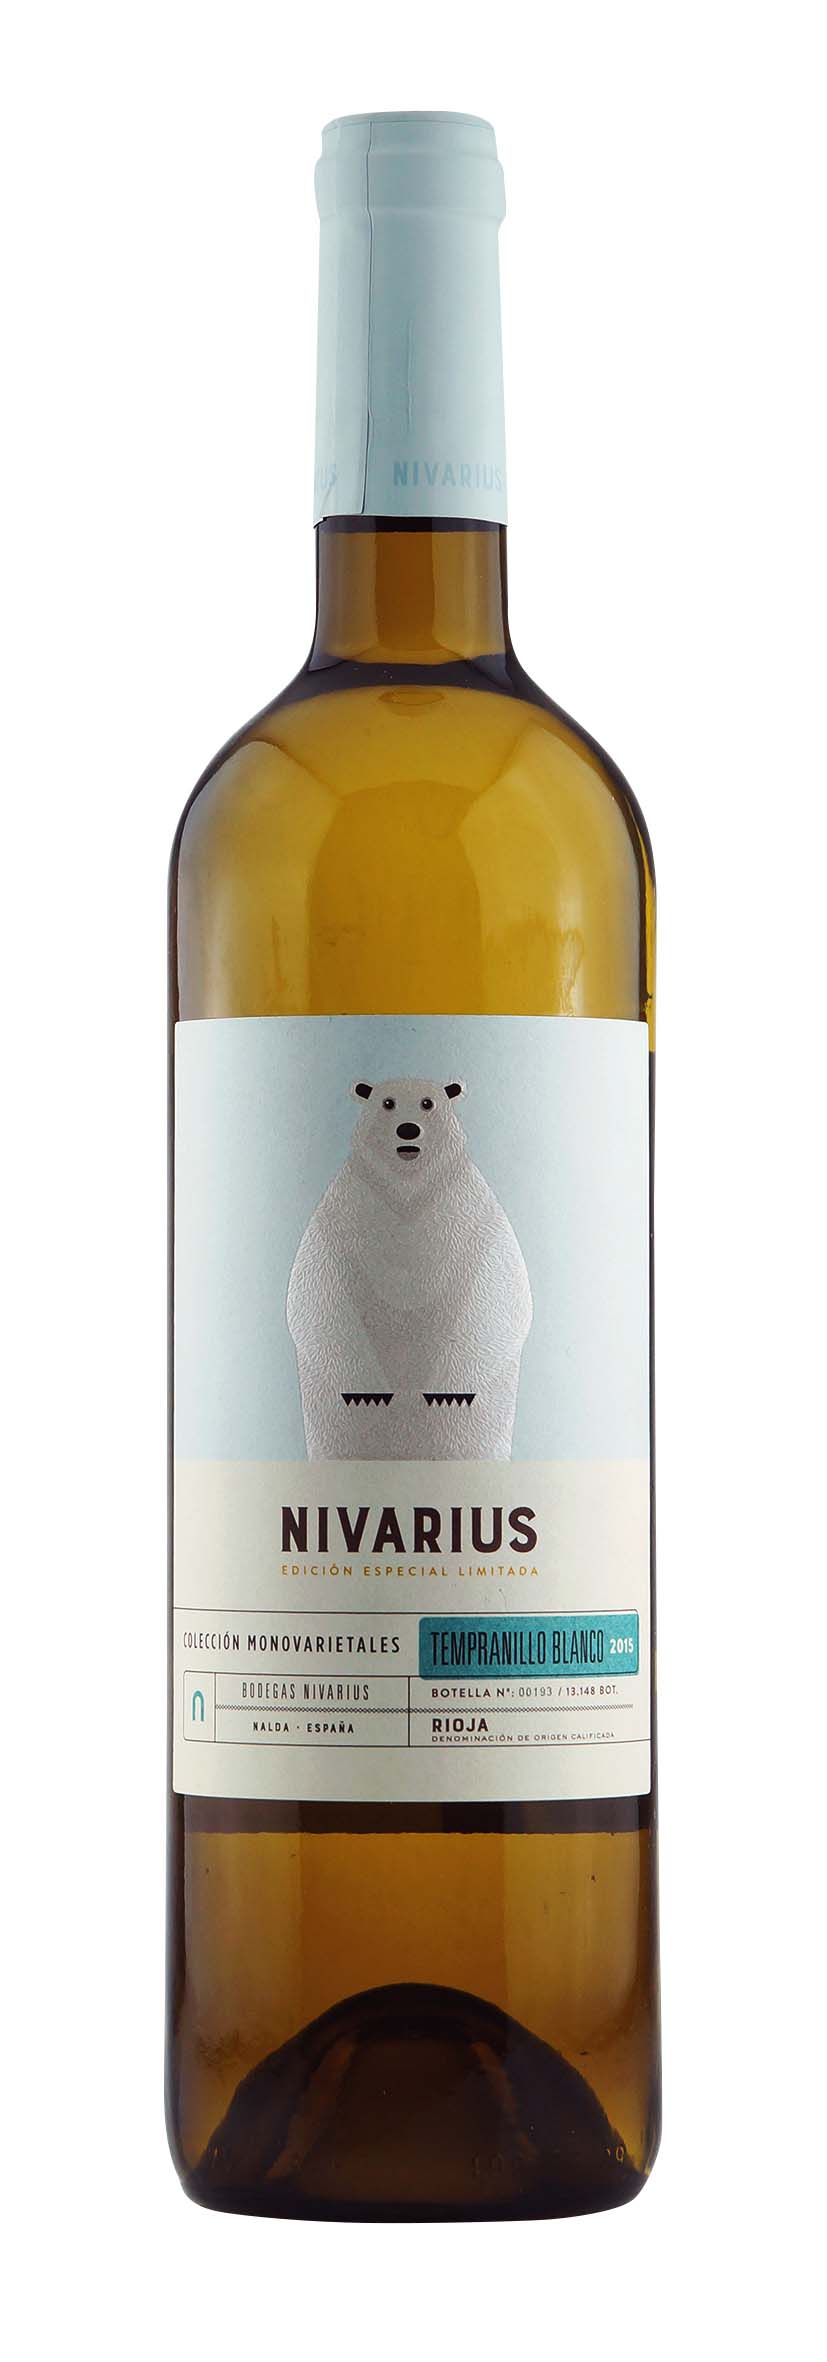 Rioja DOCa Nivarius 2015